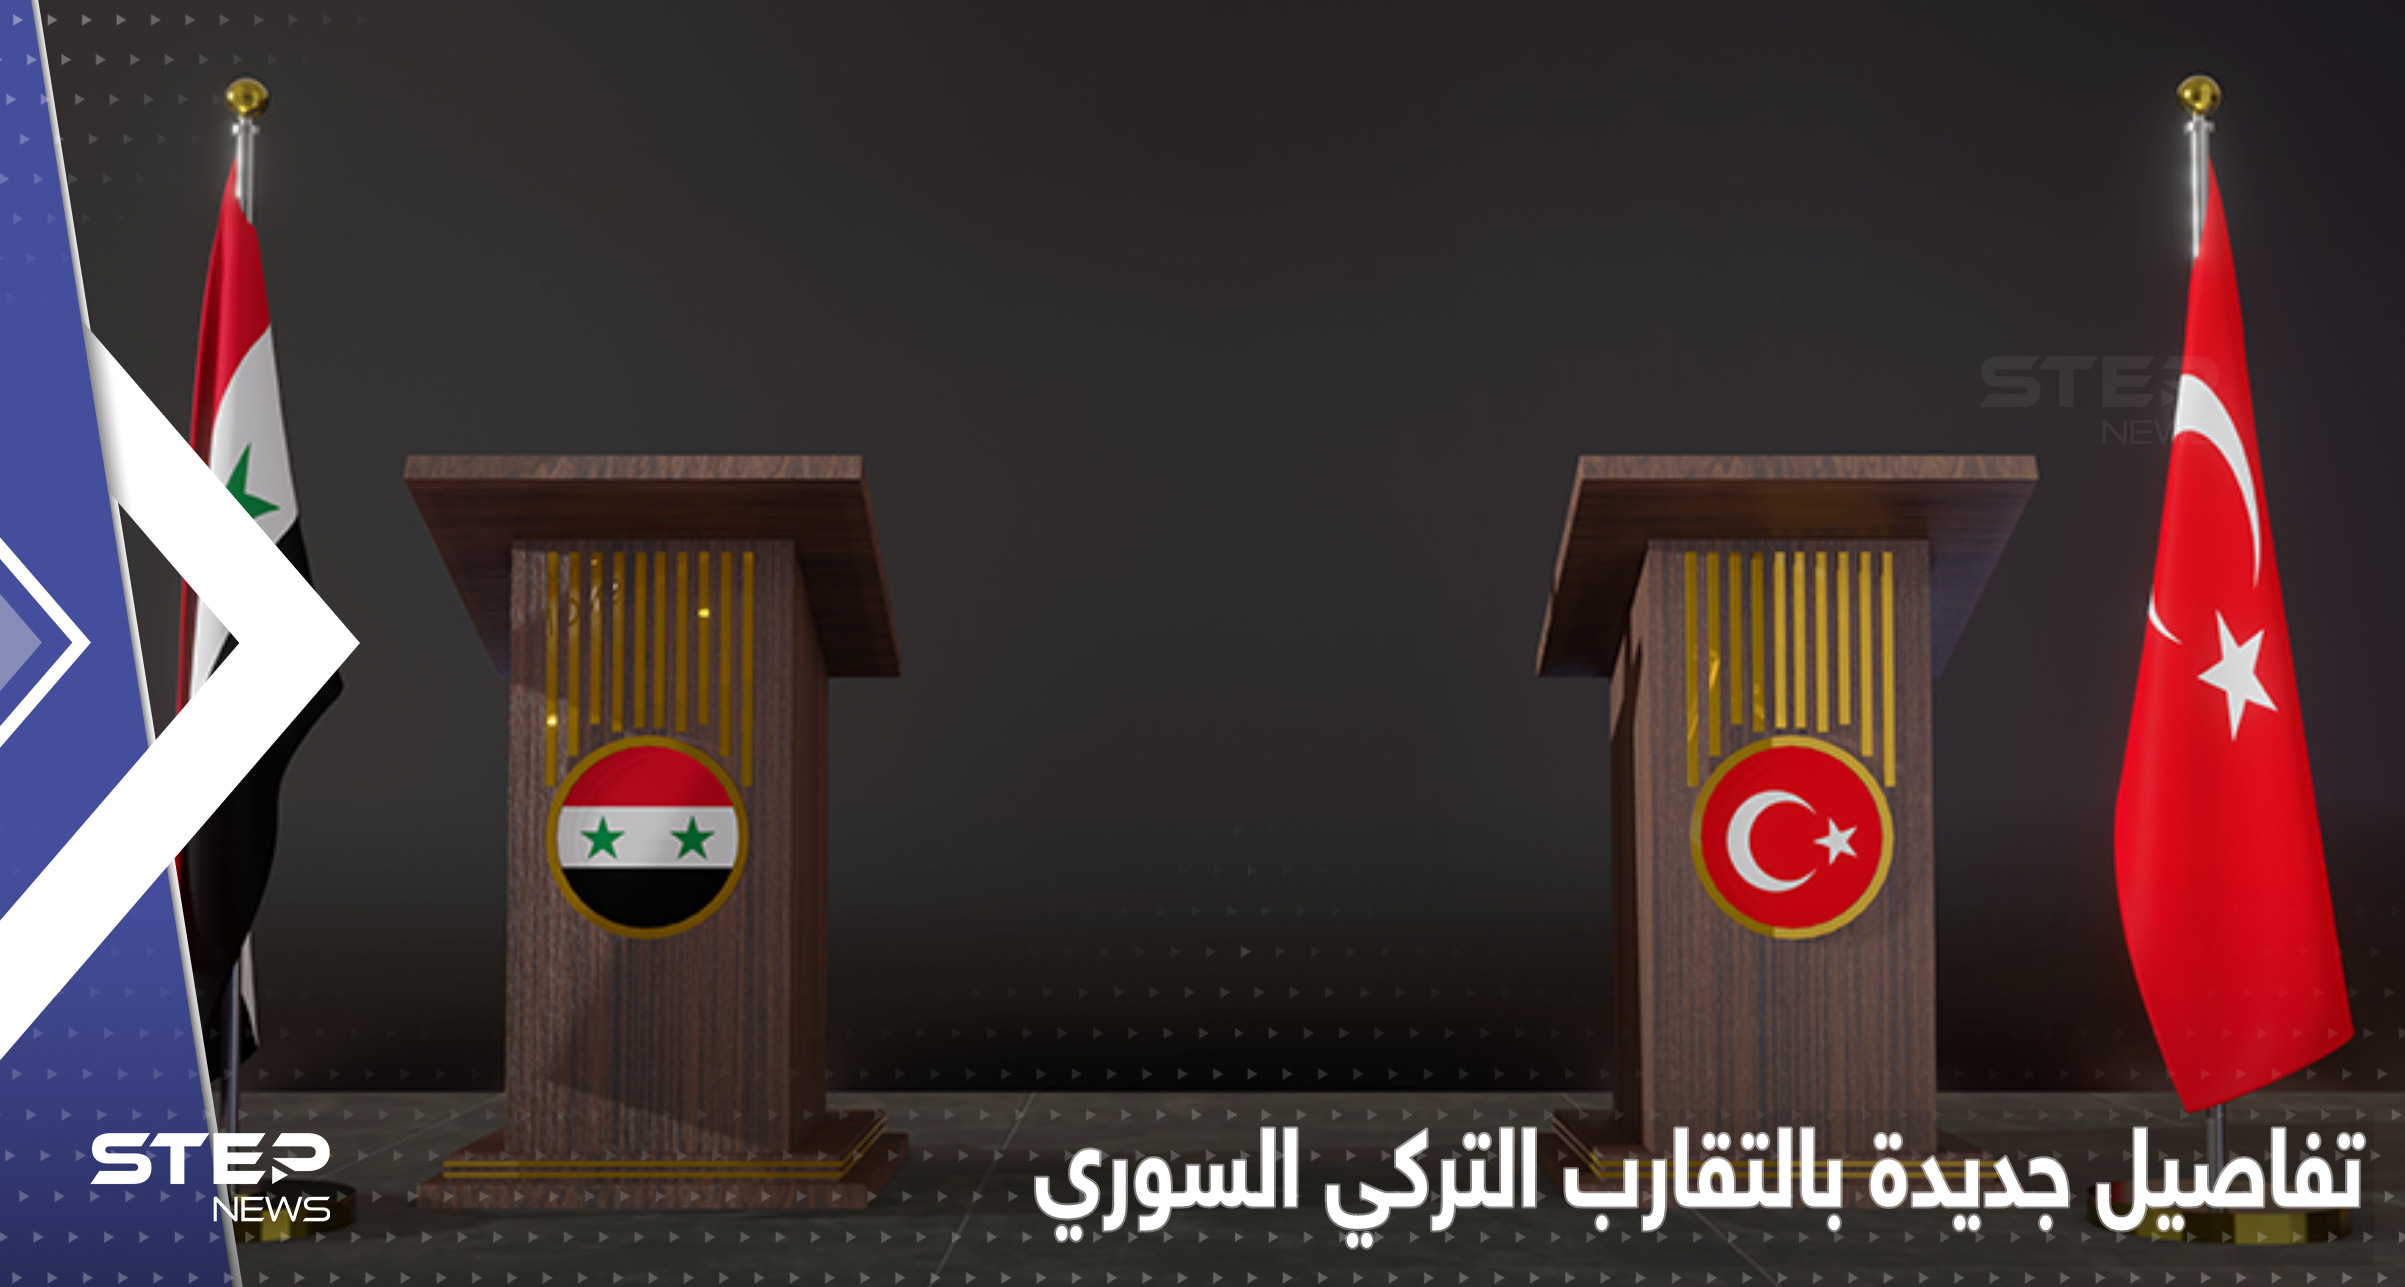 مستشار أردوغان يتحدث عن خطة لضمّ محافظة سورية كاملة لتركيا وملف التقارب "يطبخ" بهدوء 